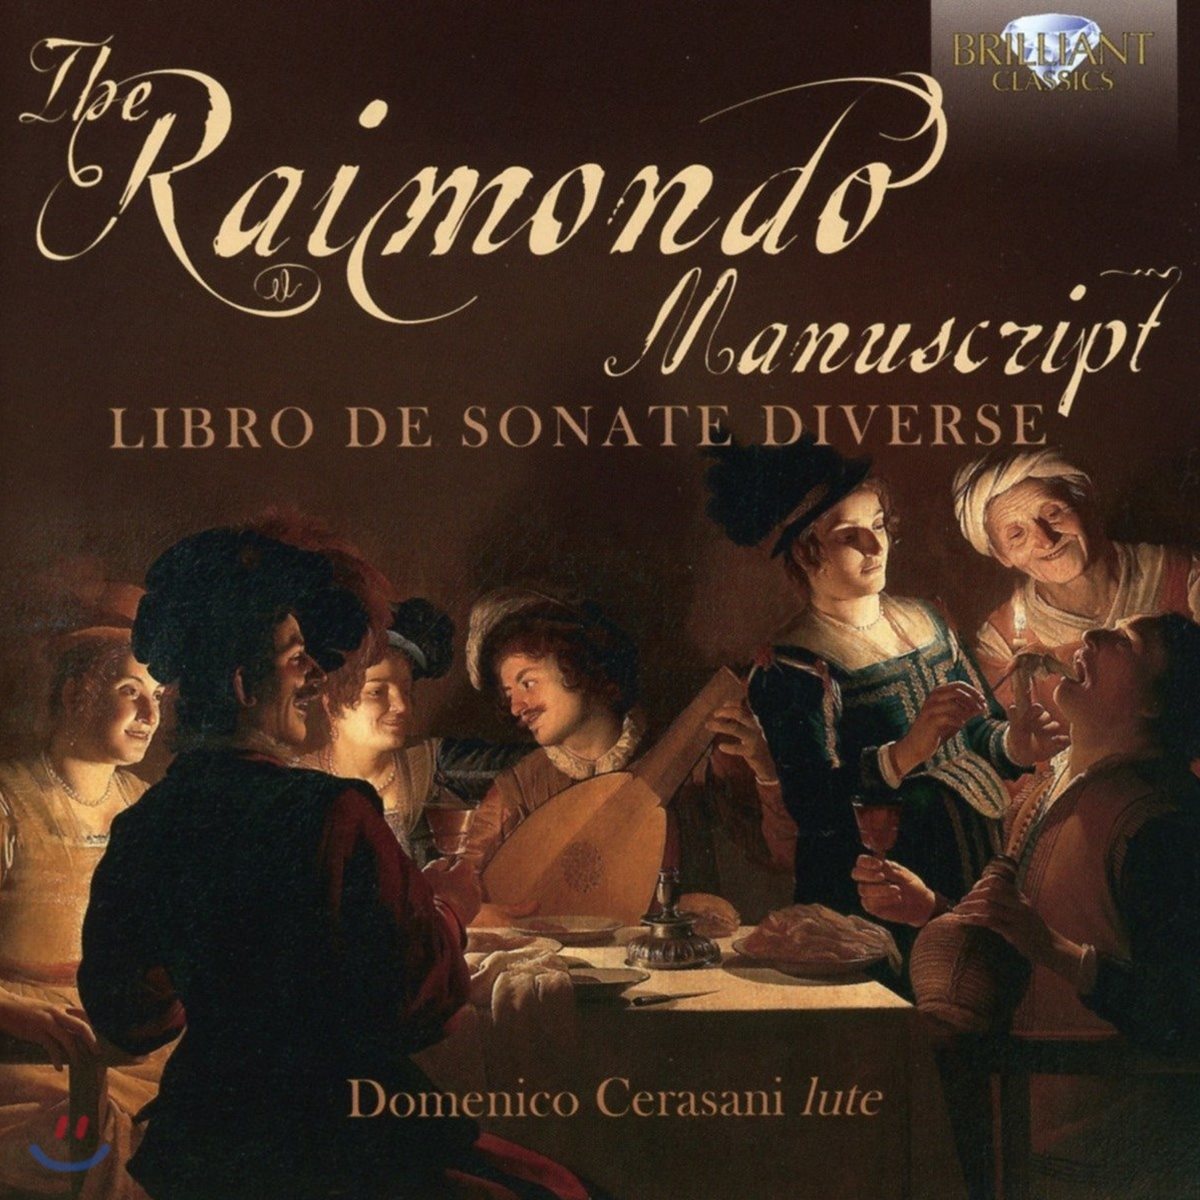 Domenico Cerasani 라이몬도 필사본: 다양한 소나타 작품집 - 17세기 류트 작품집 (The Raimondo Manuscript: Libro de Sonate Diverse)